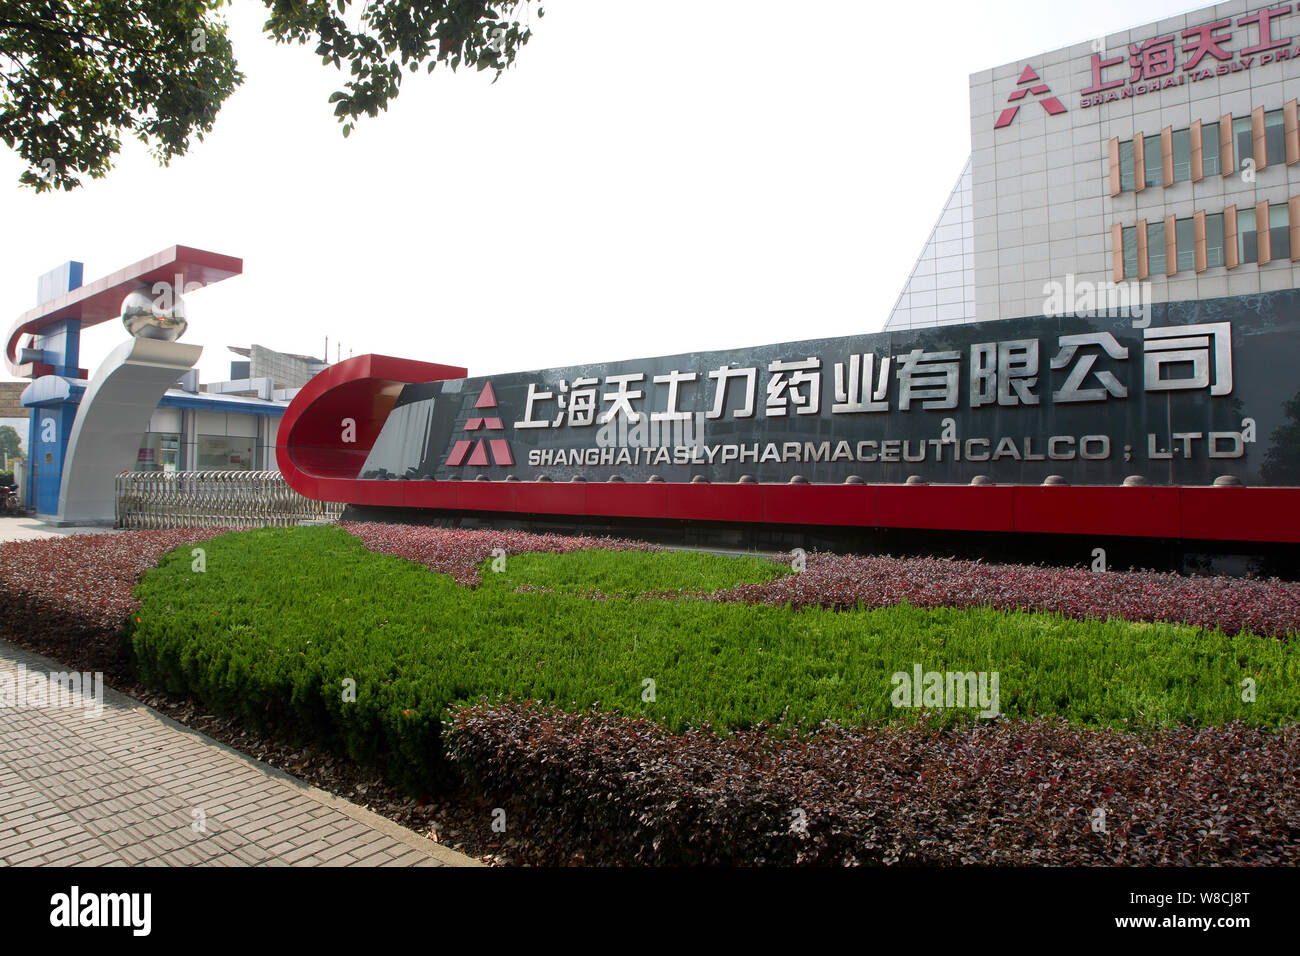 ---- Blick auf Shanghai Tasly Pharmaceutical Co., Ltd. in Shanghai, China, 31. Oktober 2012. Chinesischen Pharmaunternehmen Tasly erweitert seine Tätigkeit Stockfoto